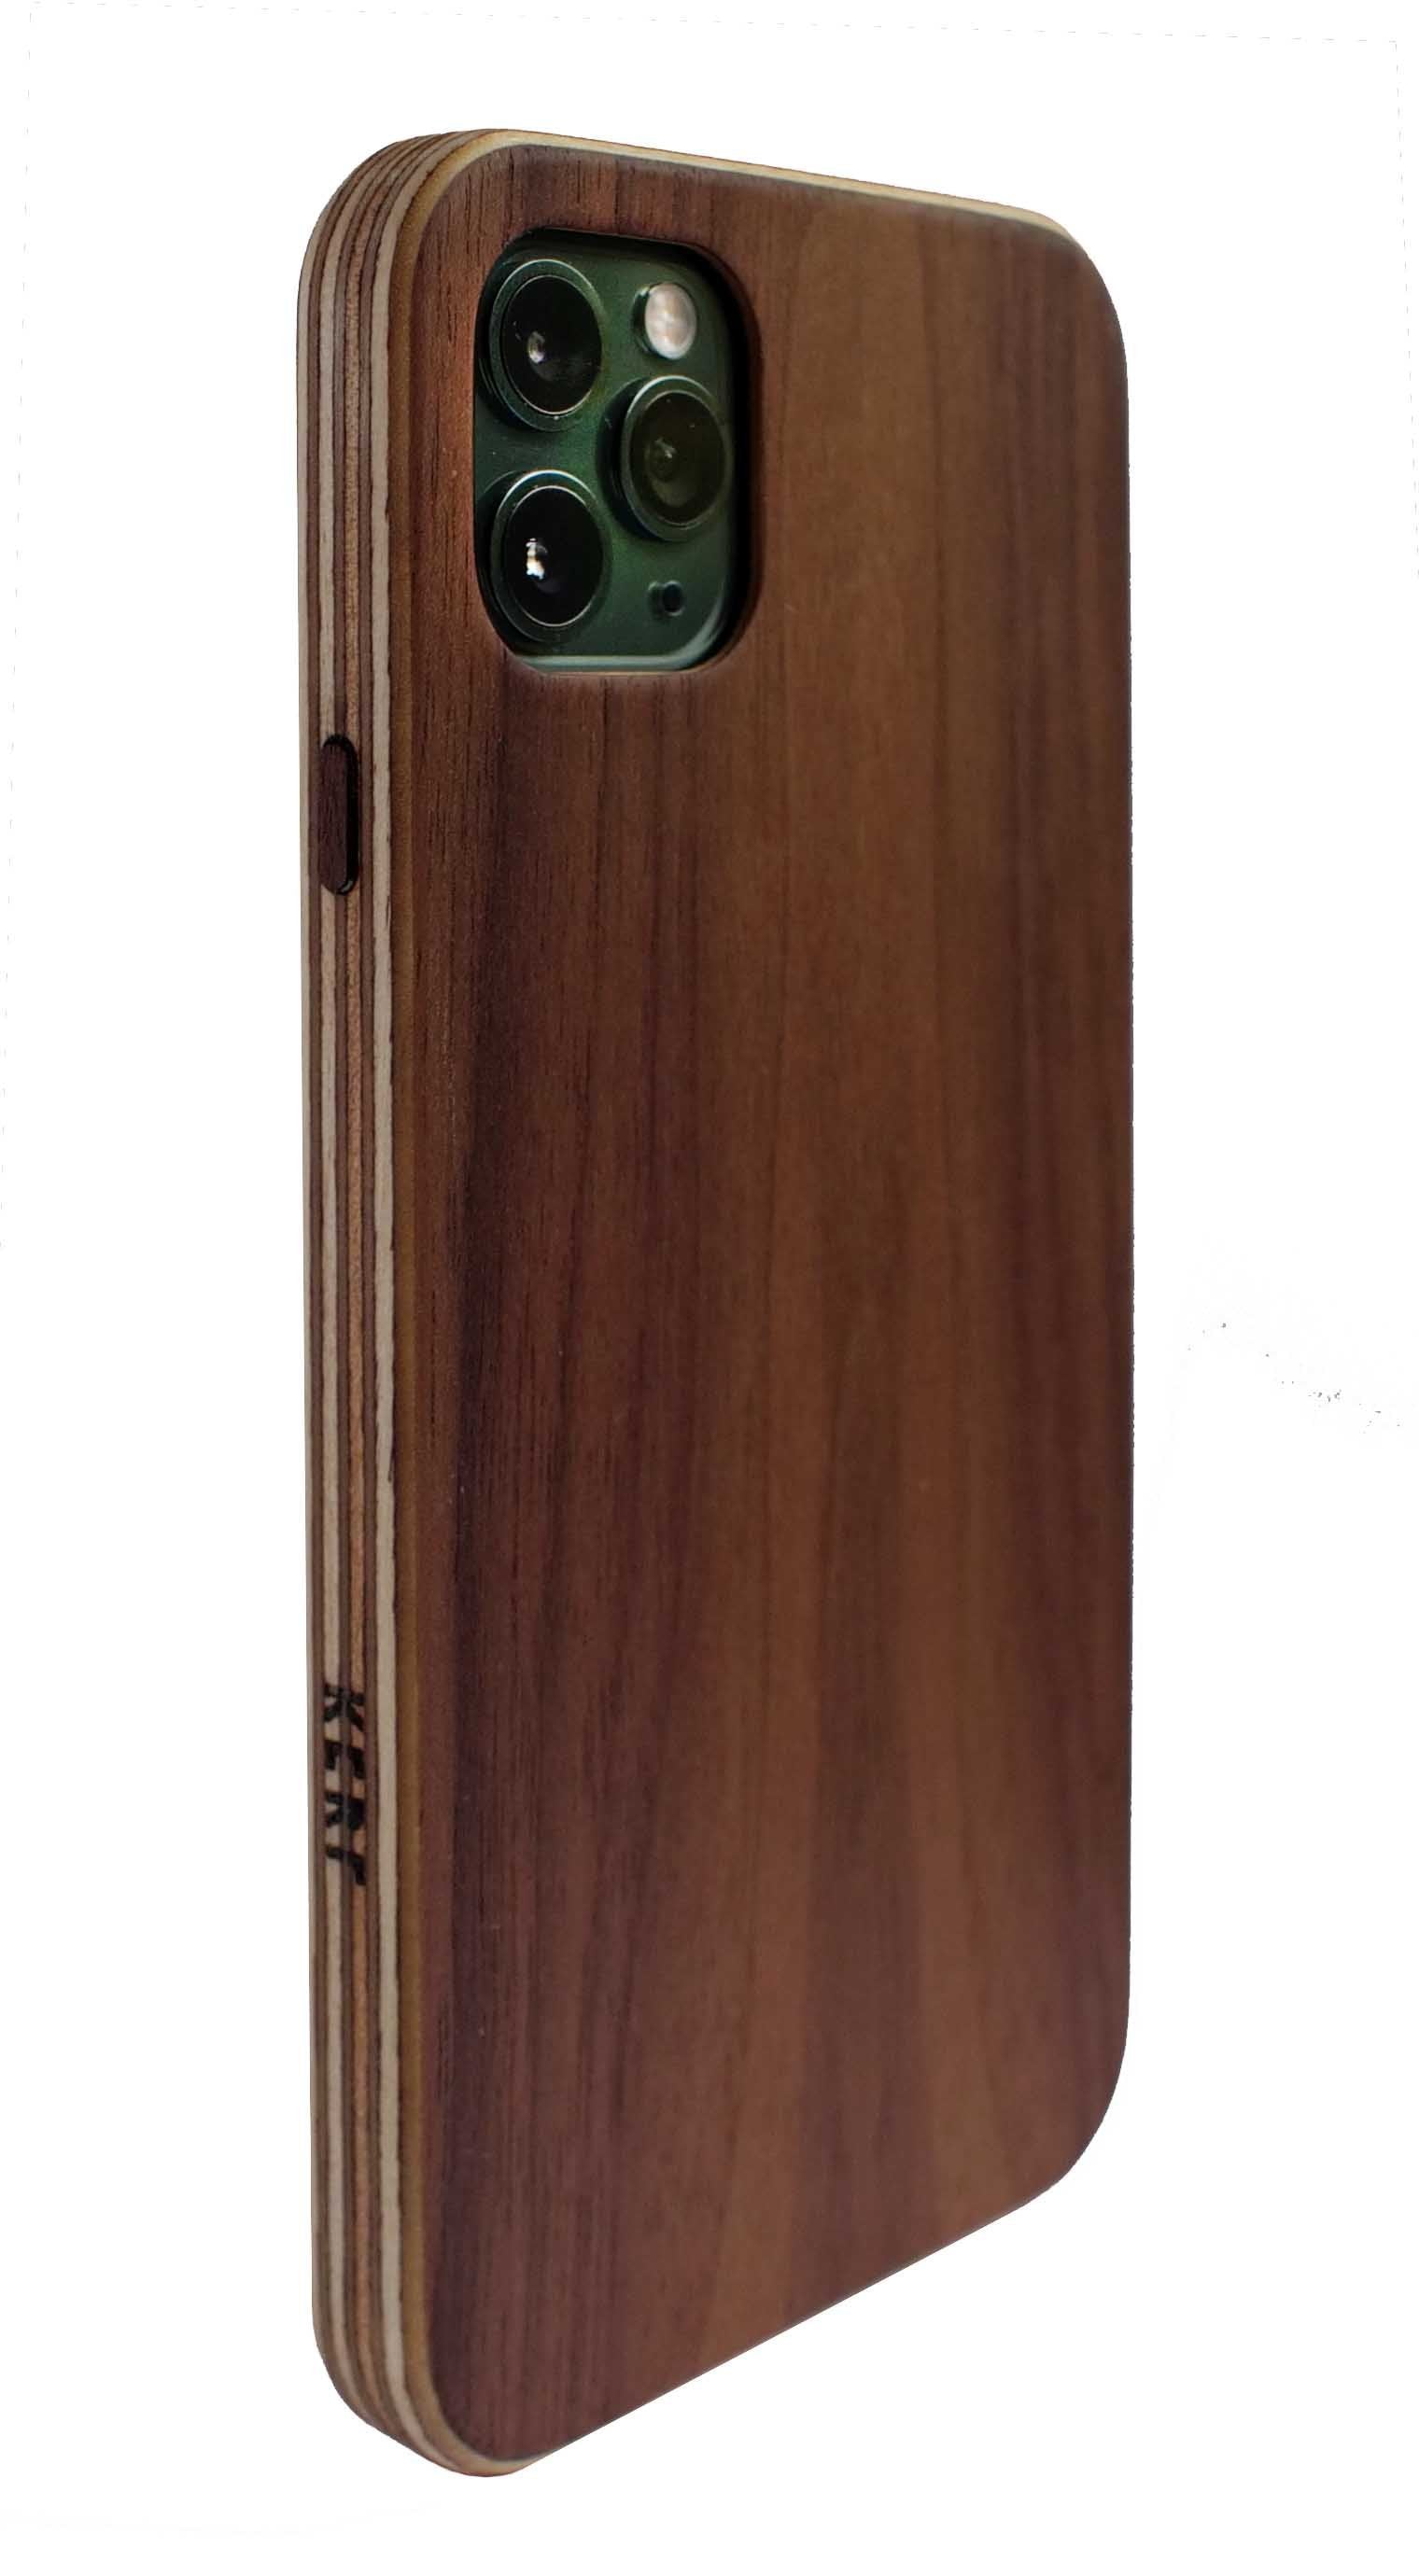 Plywood iPhone 15 Plus Case